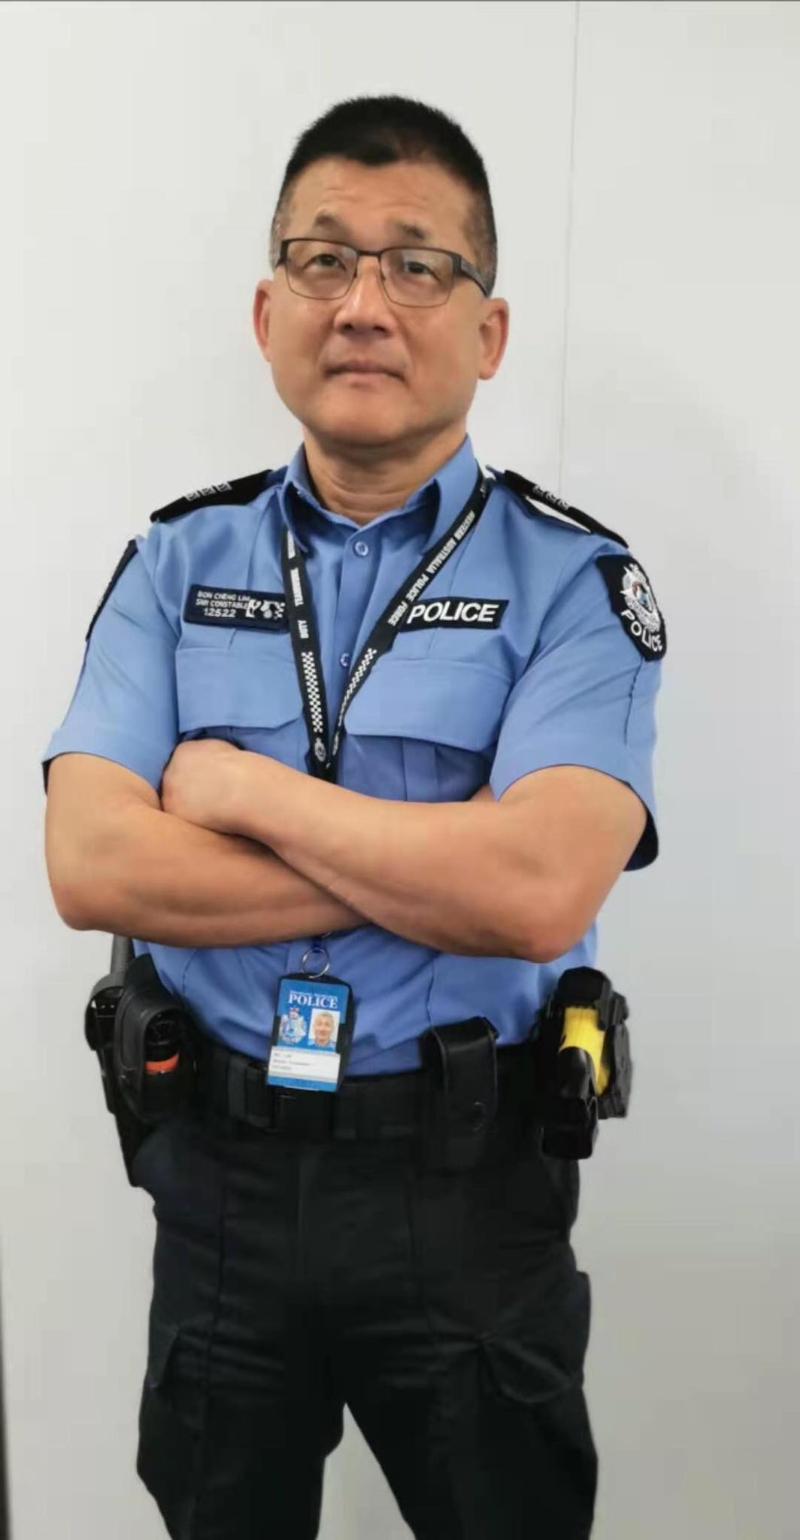 林文清说，成为一名警察是他从小的志愿，移居到澳洲后，经过严格的考核和训练，顺利成为一名警员，更在当地服务了十多年。